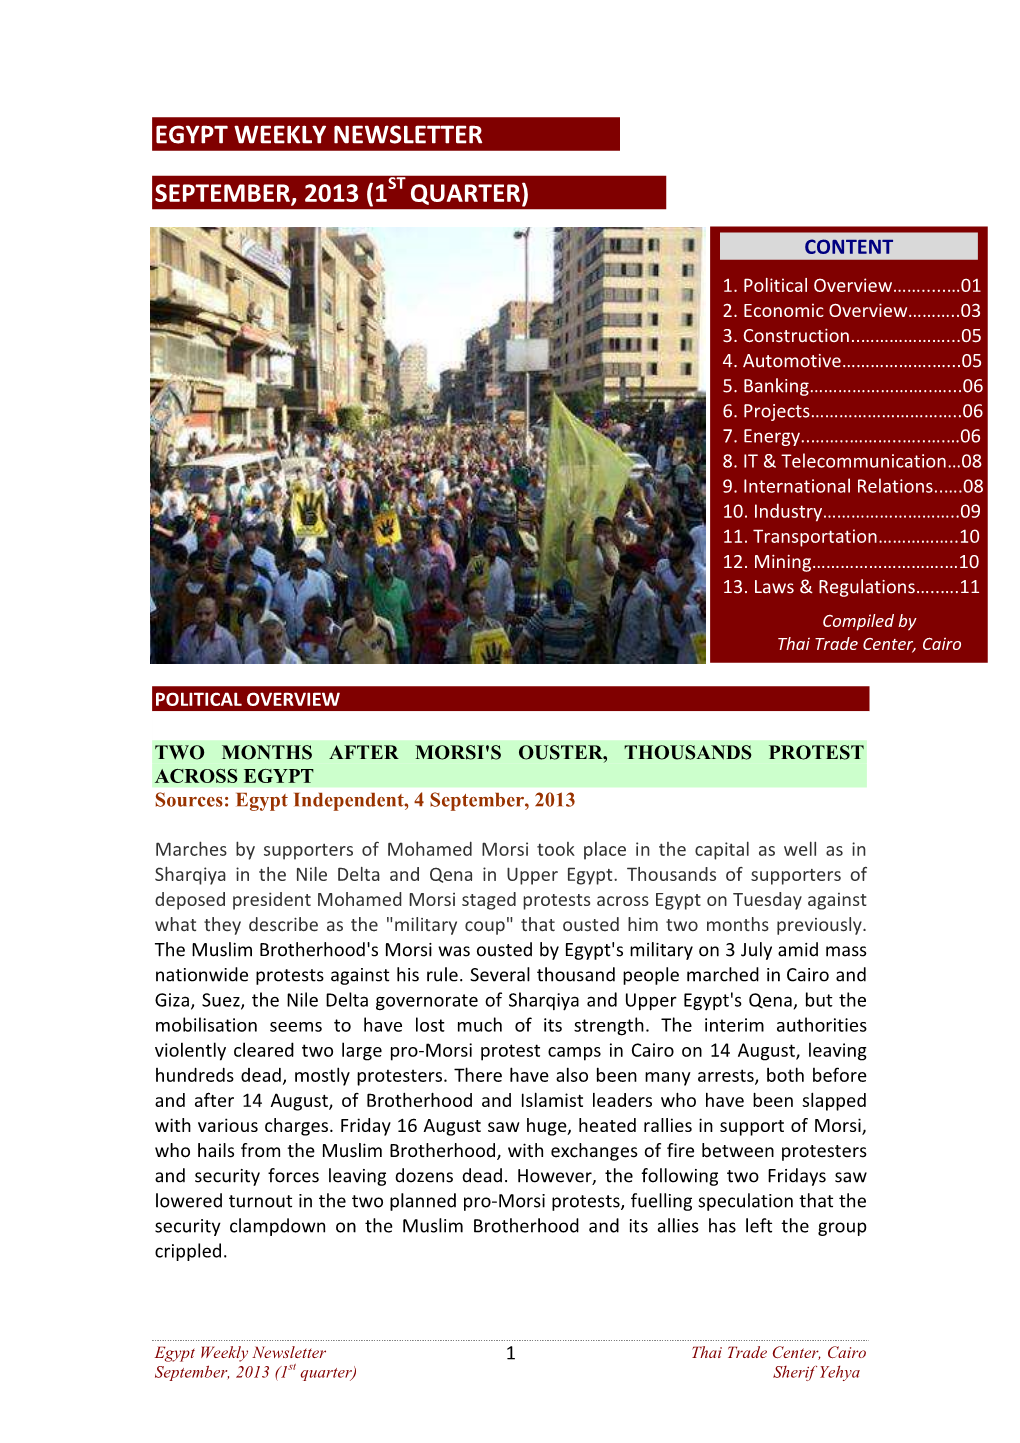 Egypt Weekly Newsletter September 2013, 1St Quarter